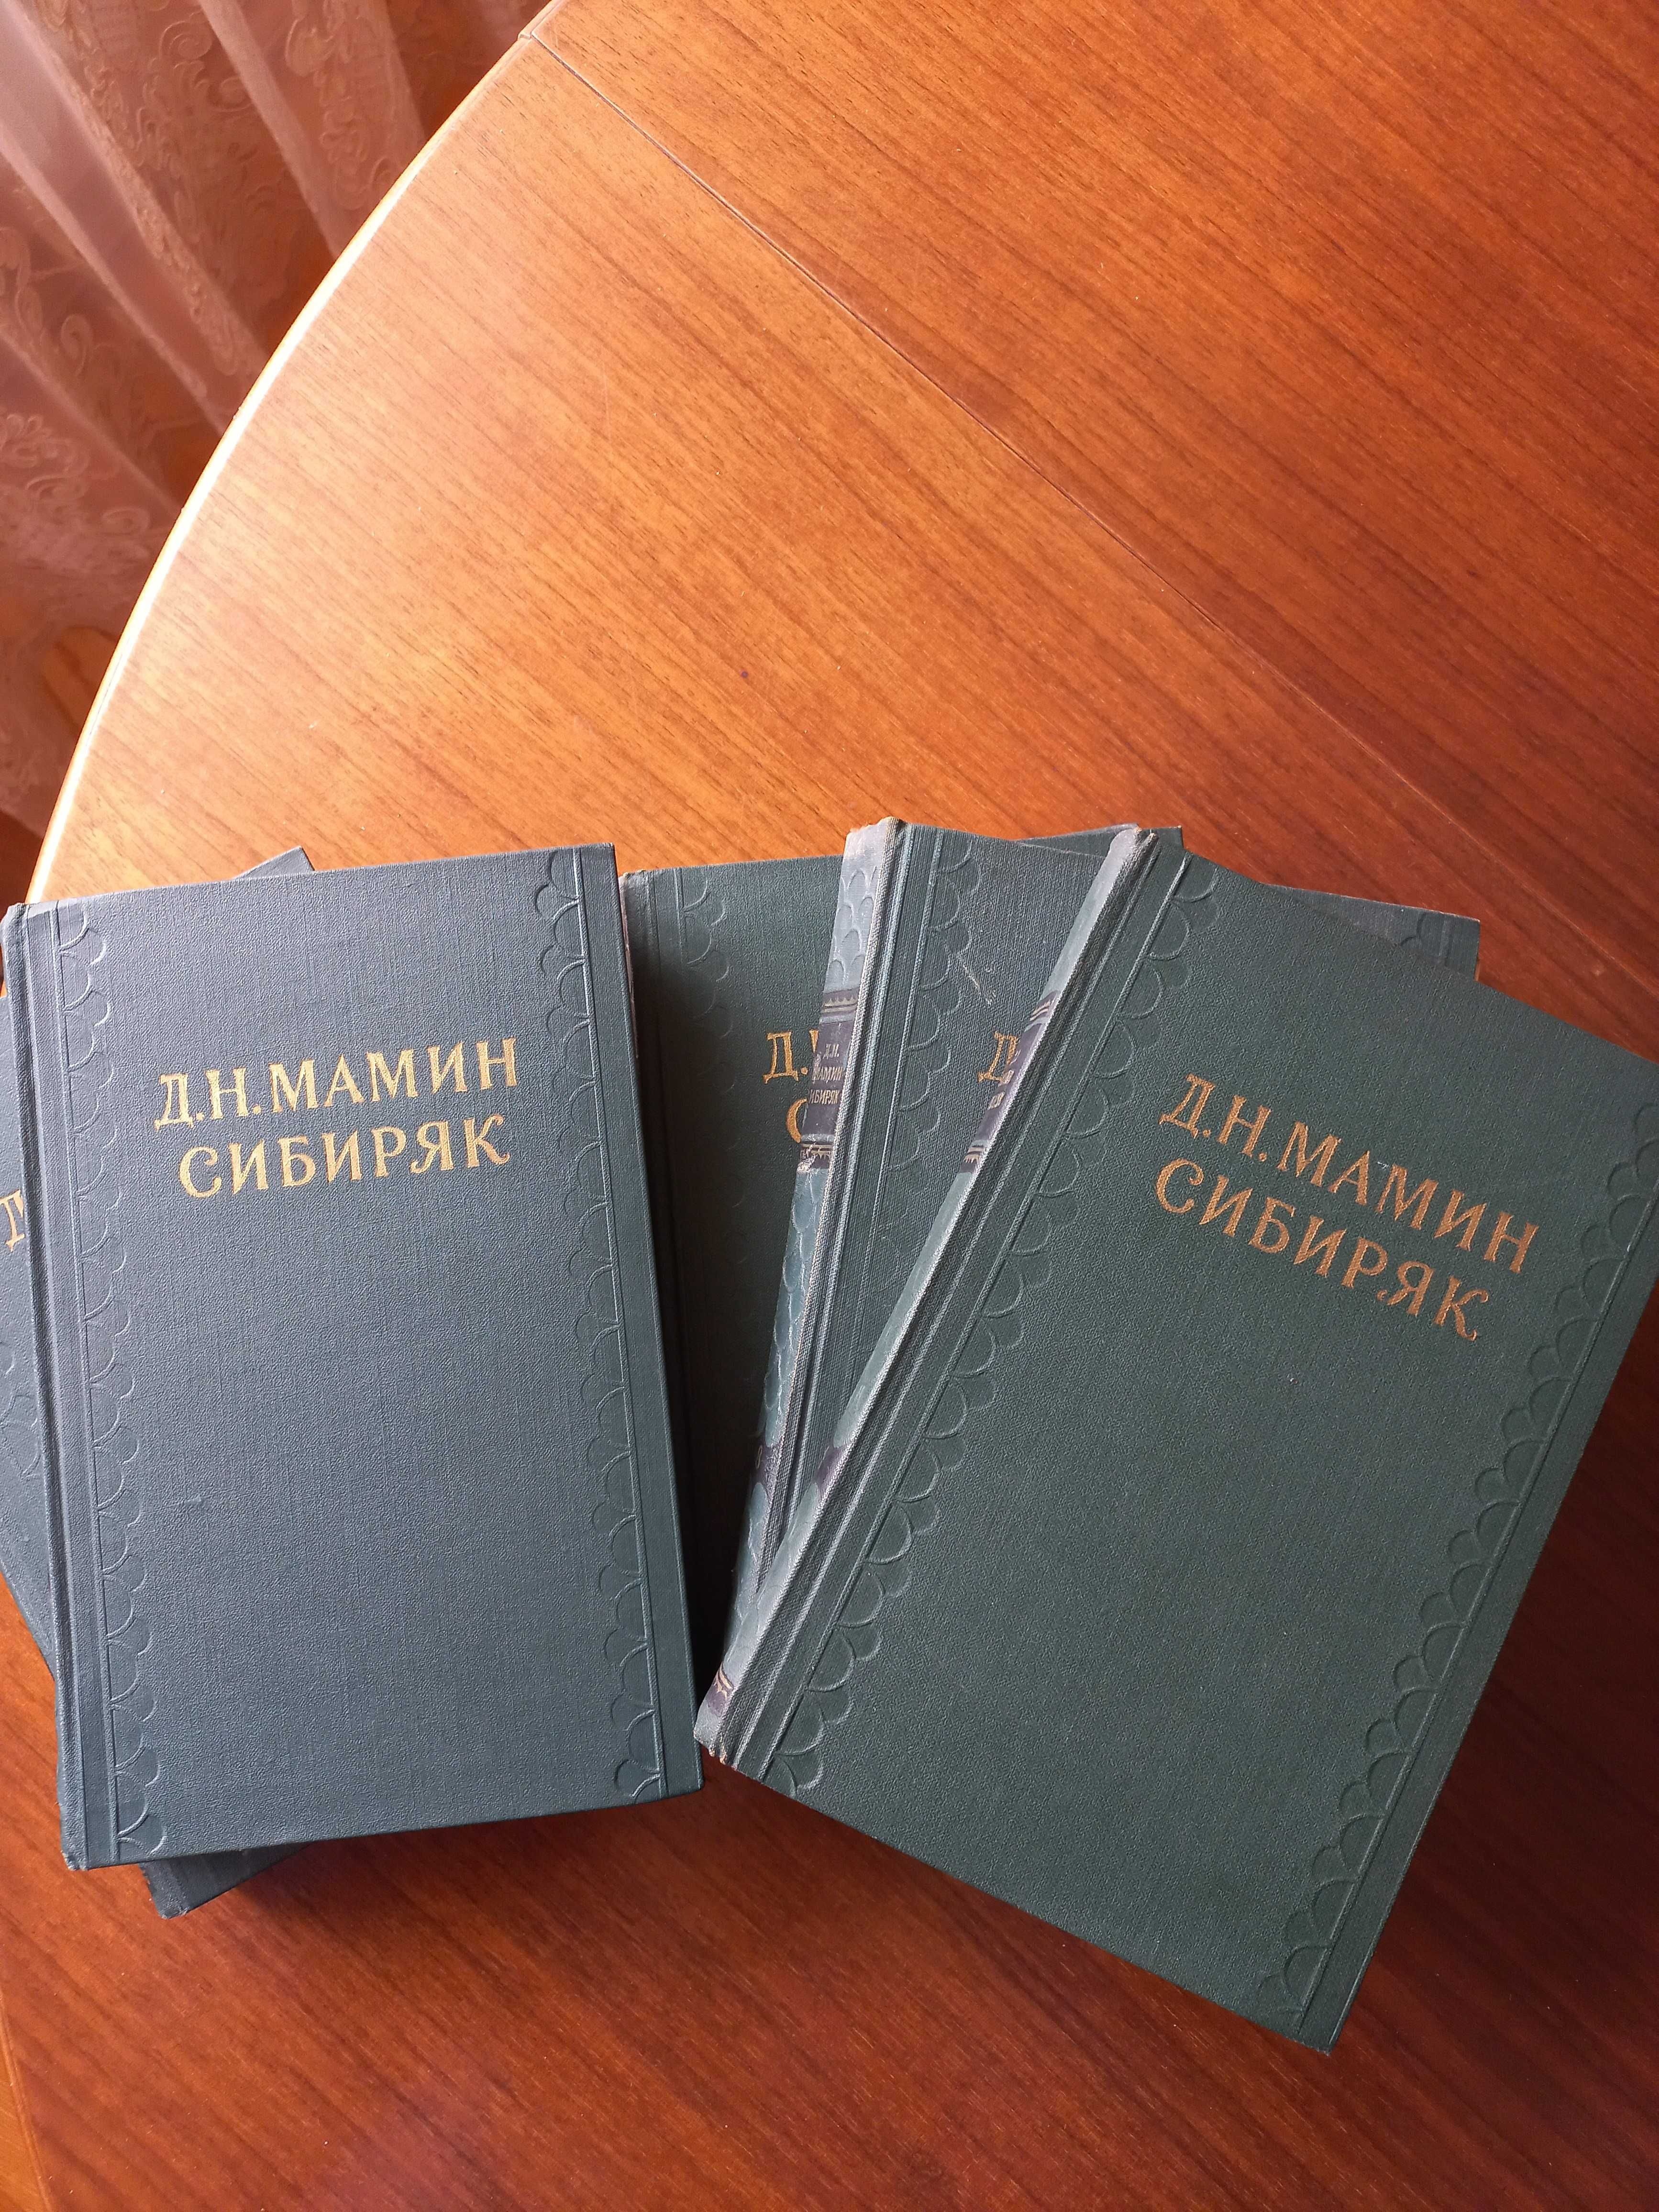 Мамин-Сибиряк Д.Н., пять томов из собрания сочинений в 10 томах